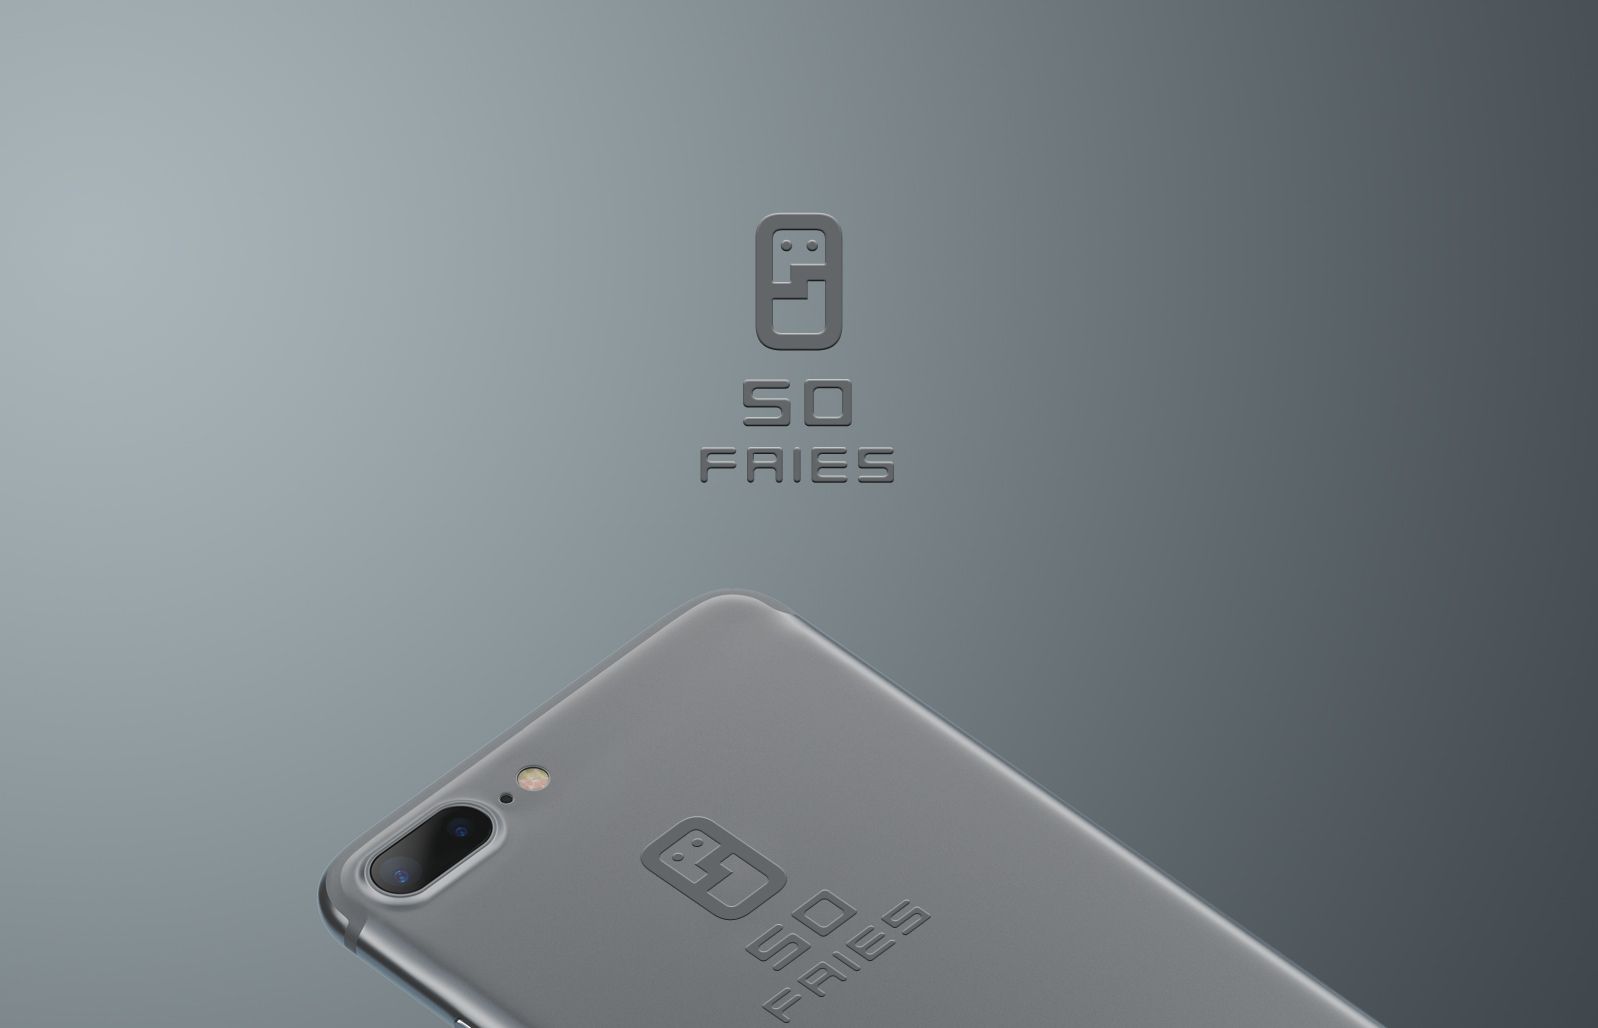 Логотип для бренда аксесуаров для сотовых телефонов 50fries - дизайнер andblin61